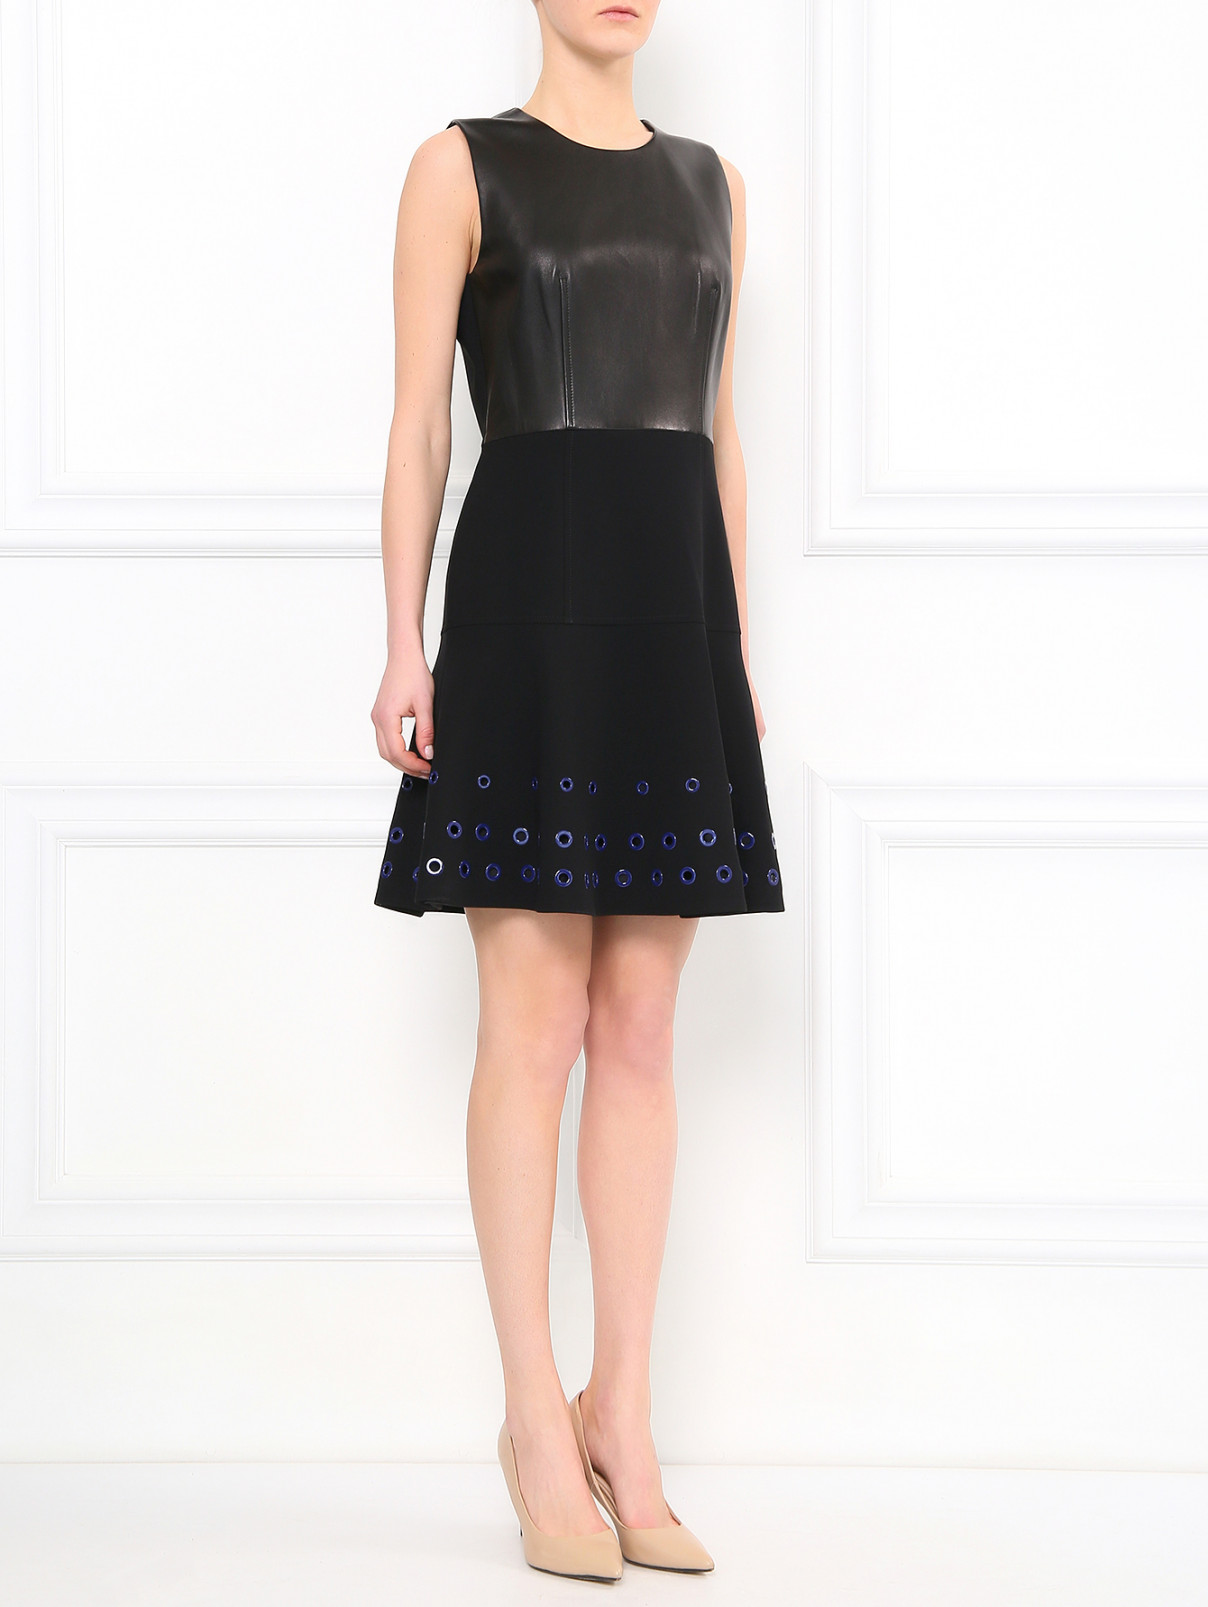 Платье-мини из кожи с контрастной фурнитурой Barbara Bui  –  Модель Общий вид  – Цвет:  Черный